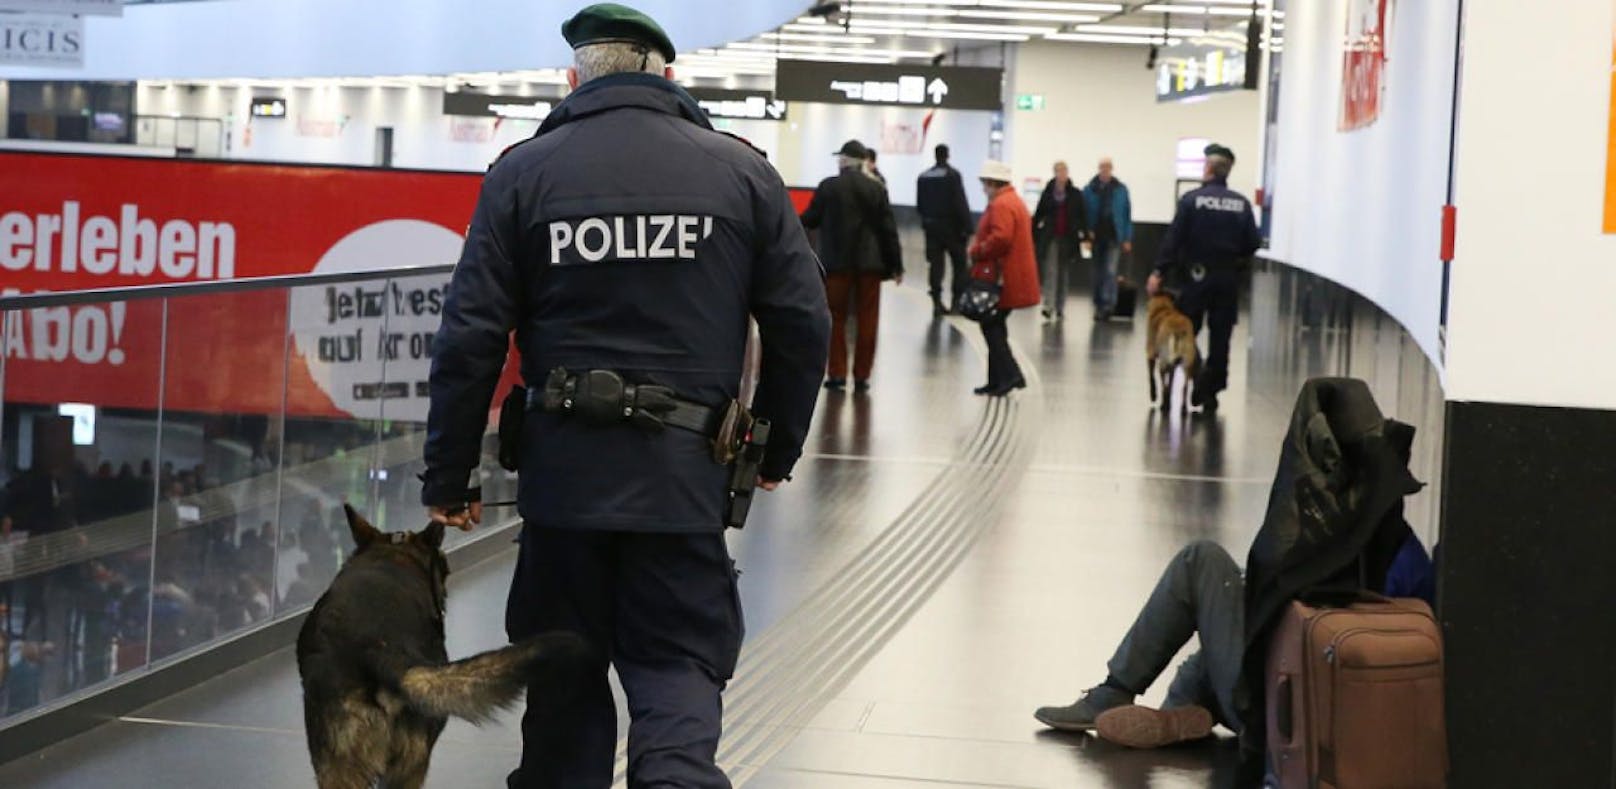 (Symbolbild) Polizei am Flughafen Wien